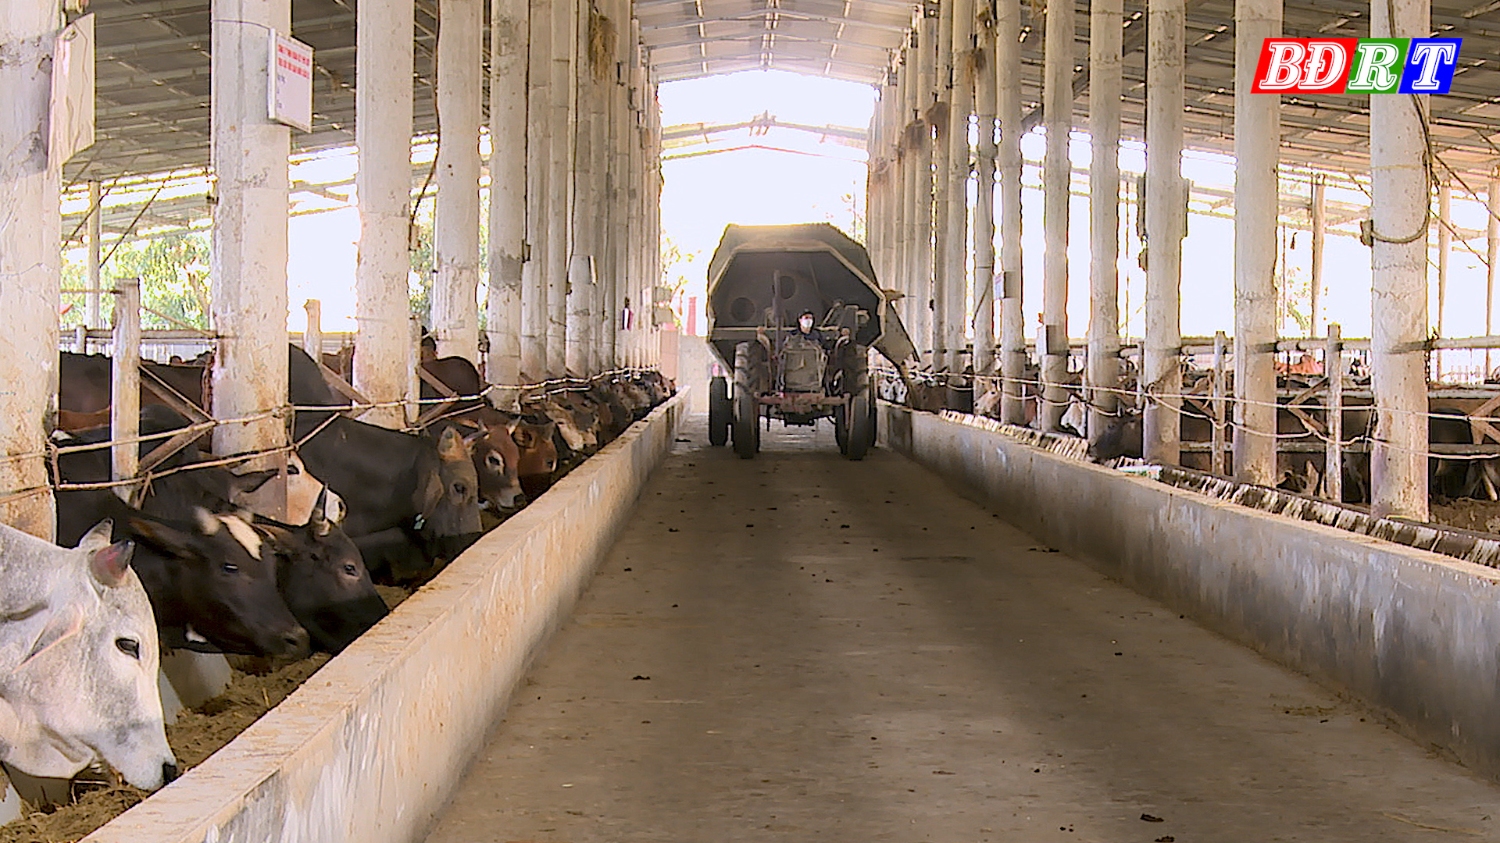 Chăn nuôi bò hữu cơ tại công ty TNHH Đoàn kết Phú Qúy mang lại hiệu quả kinh tế cao.